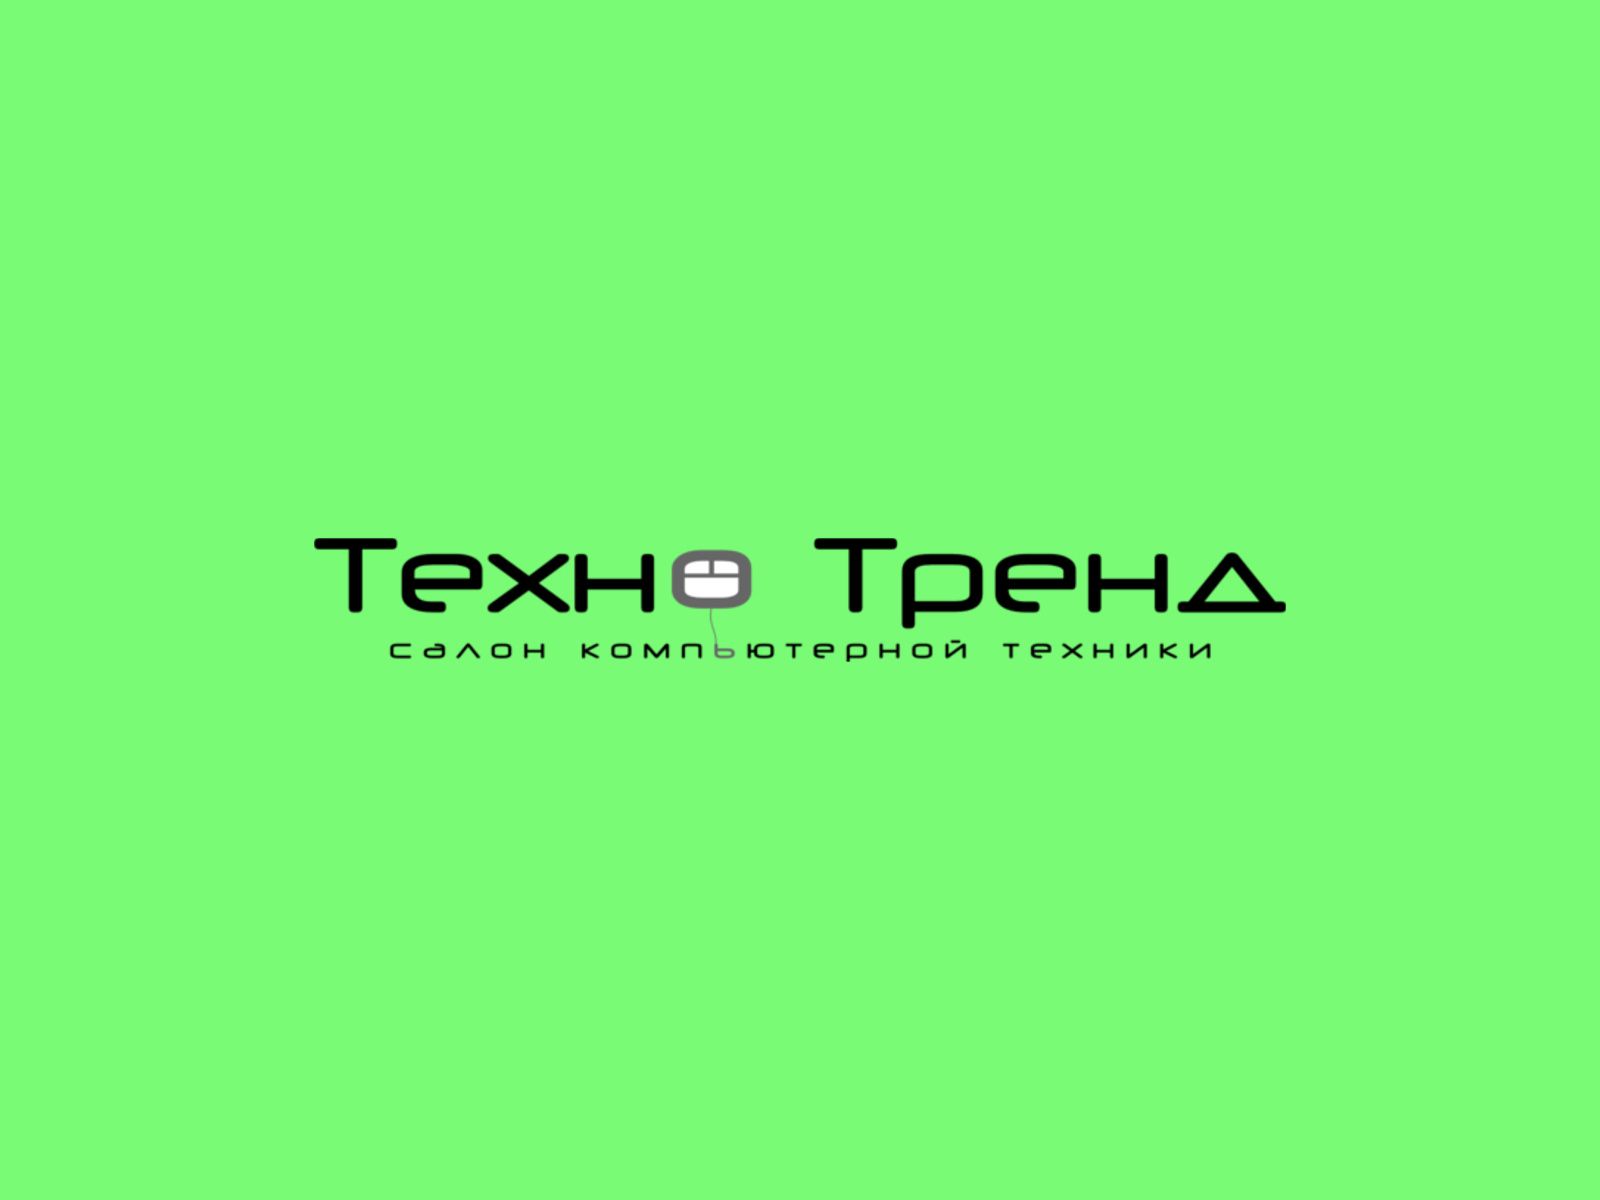 Лого и фирм. стиль для ИТ-компании - дизайнер sergius1000000